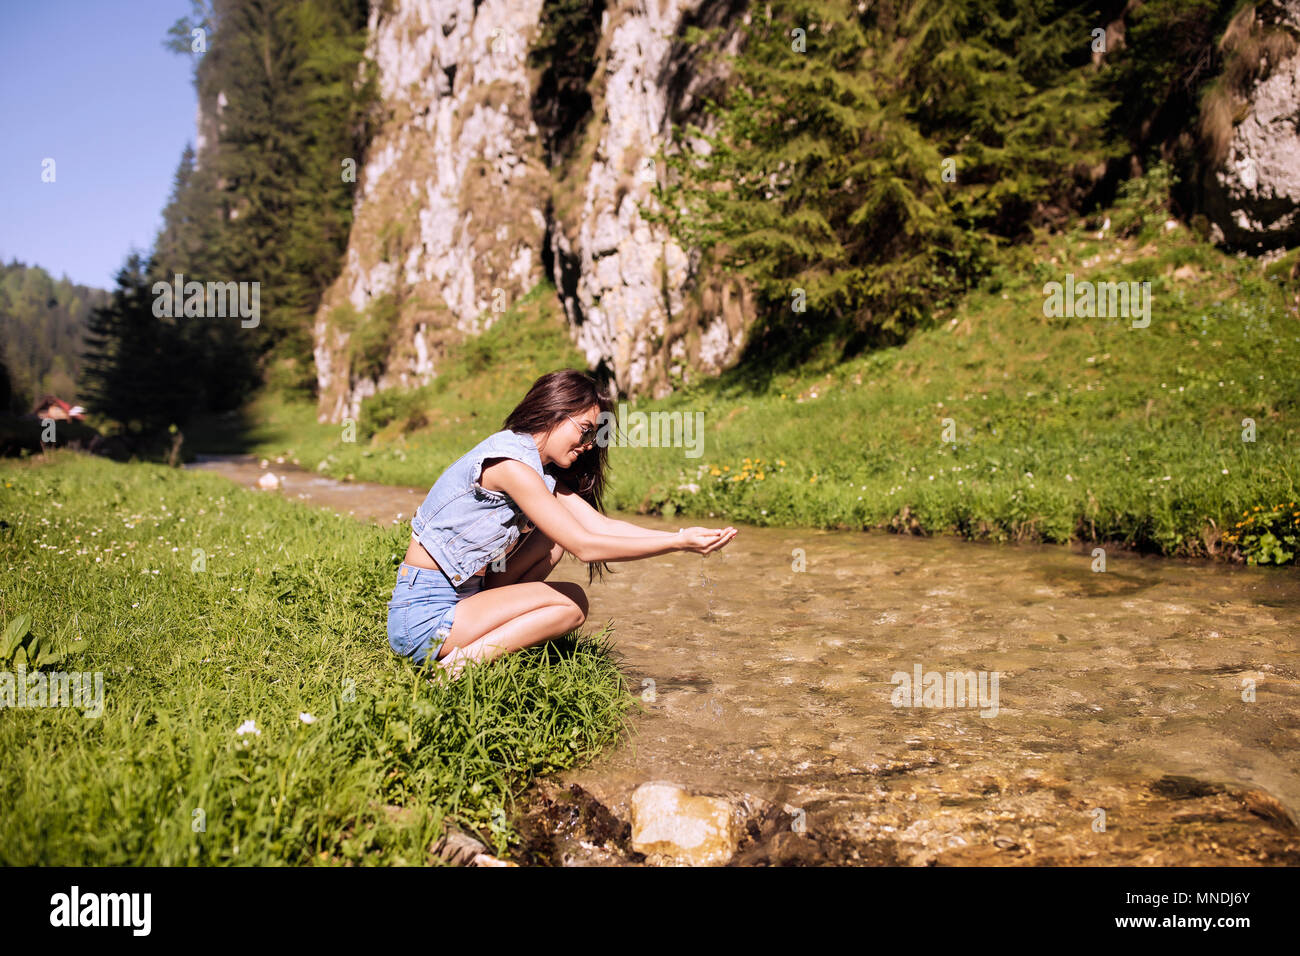 A beautiful tourist enjoys nature next to a mountain river Stock Photo